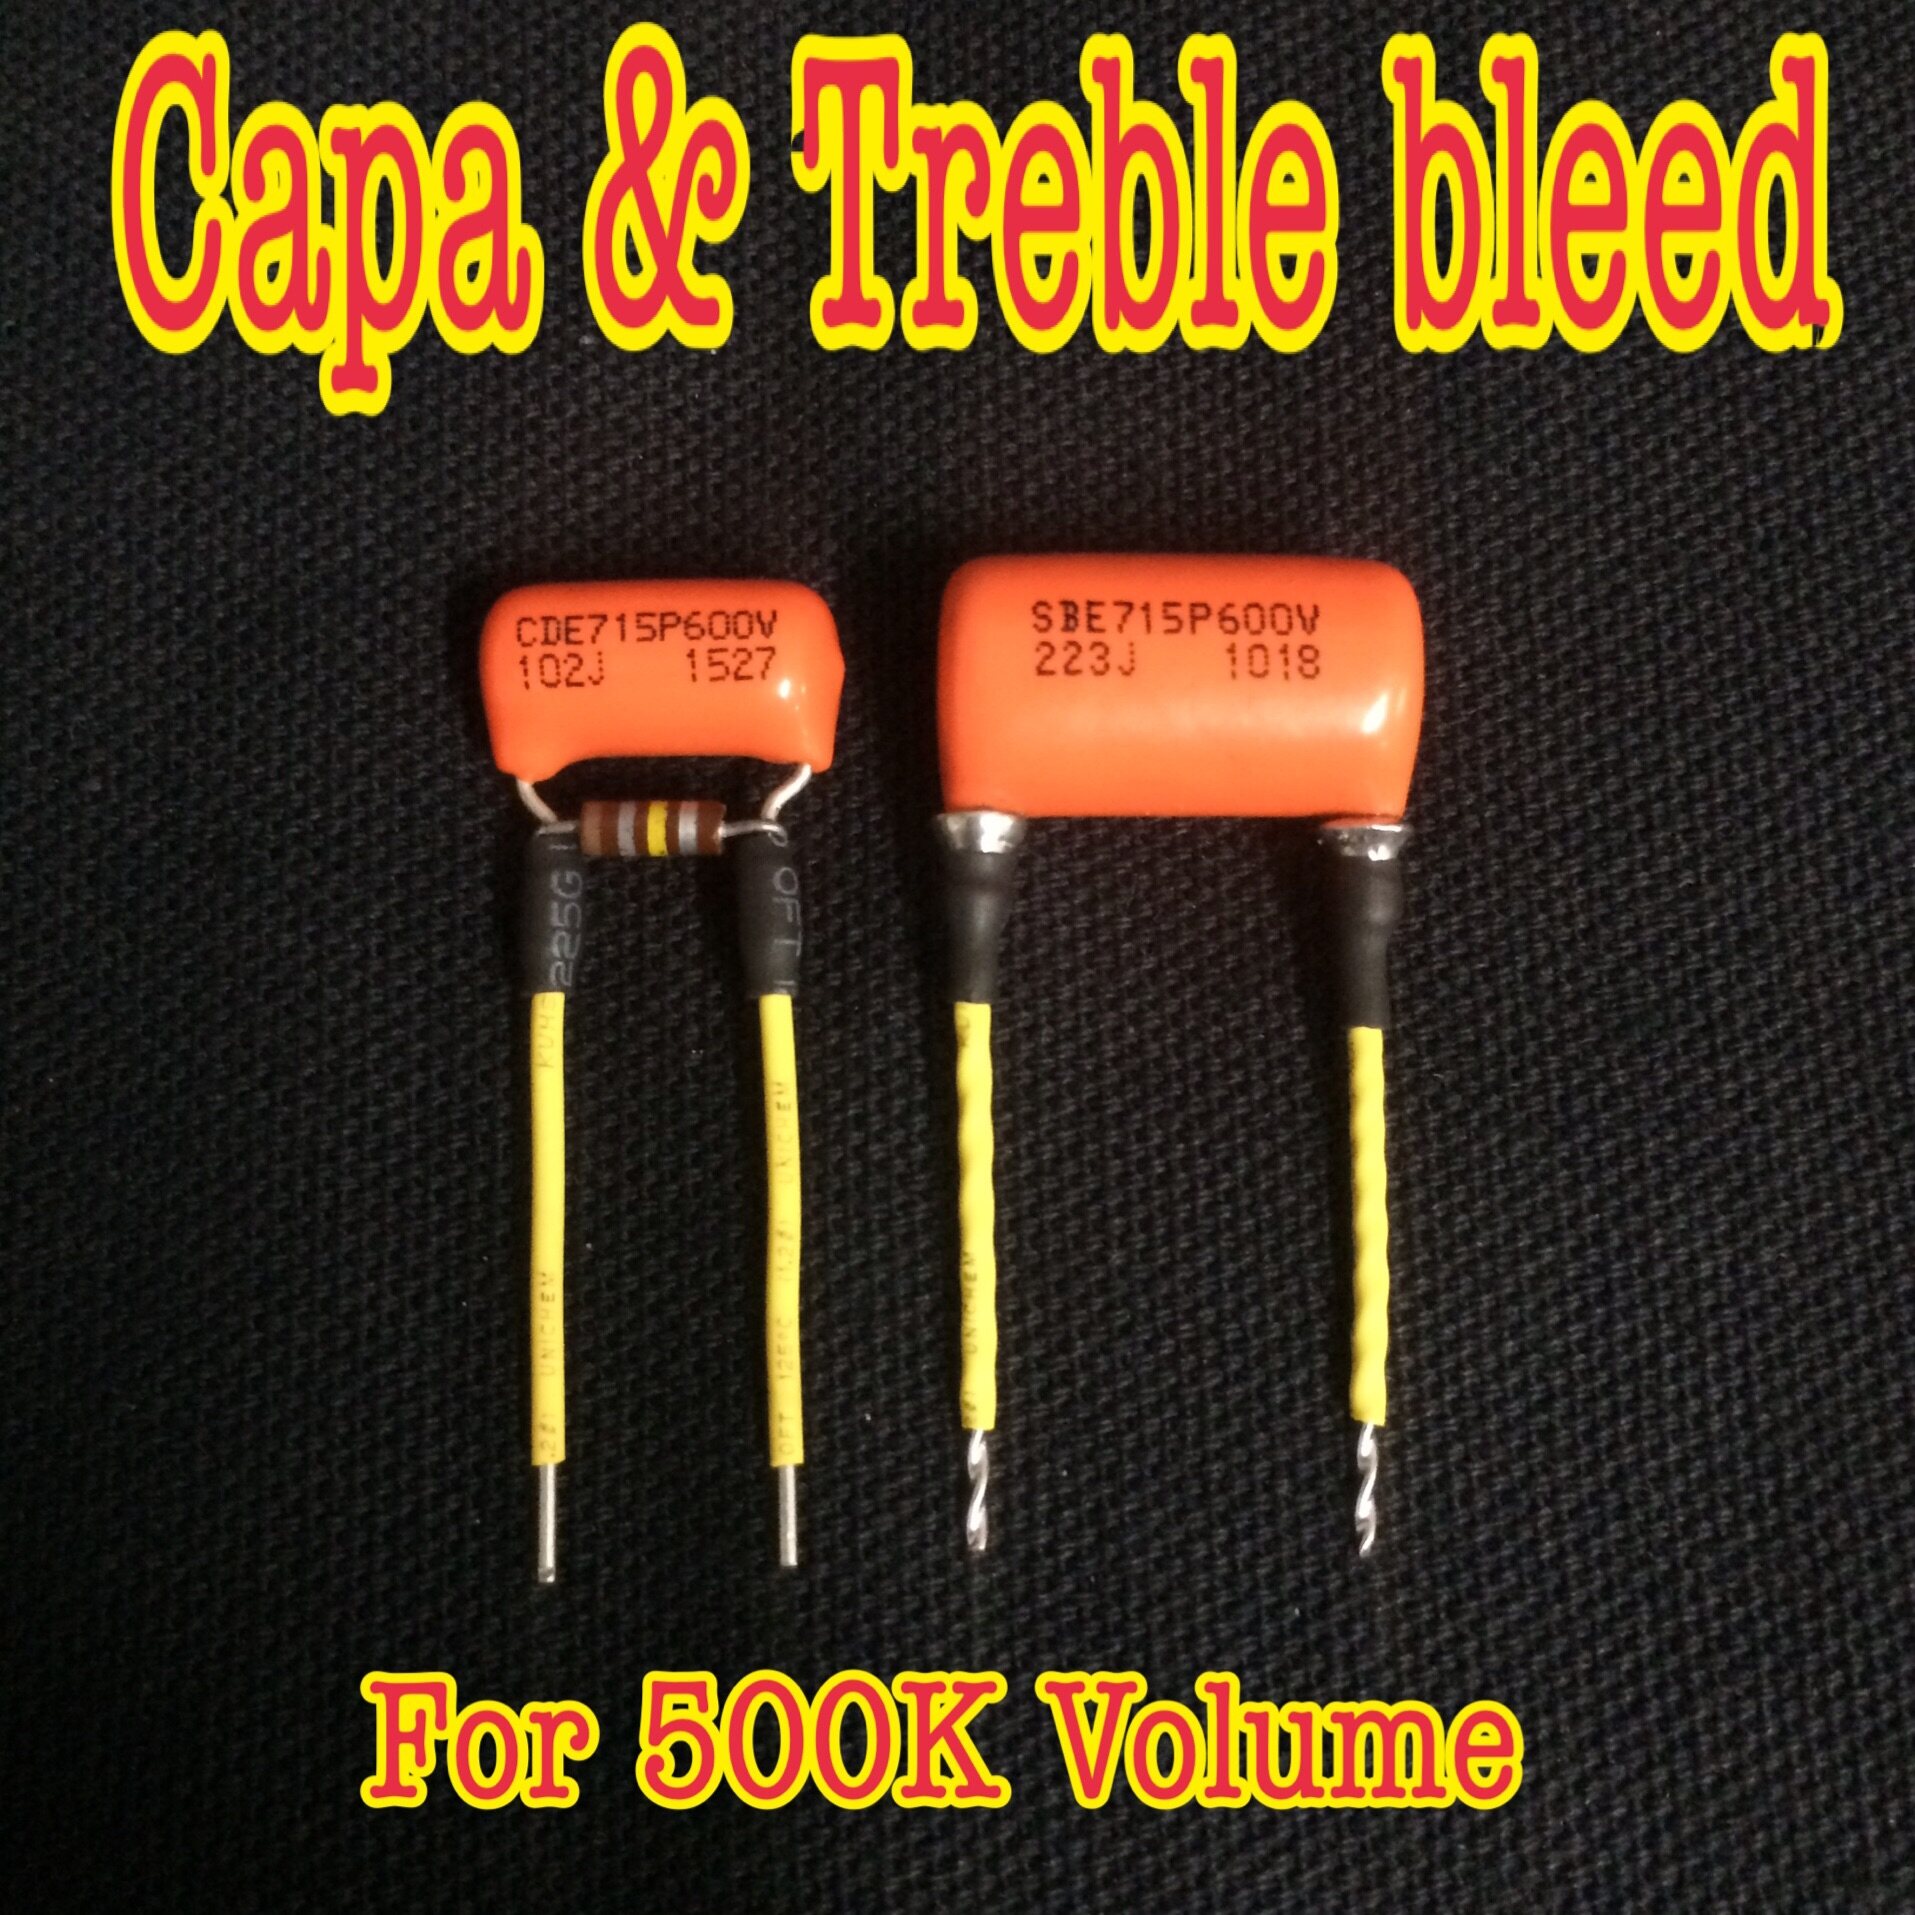 Capa & Treble bleed  For guitar